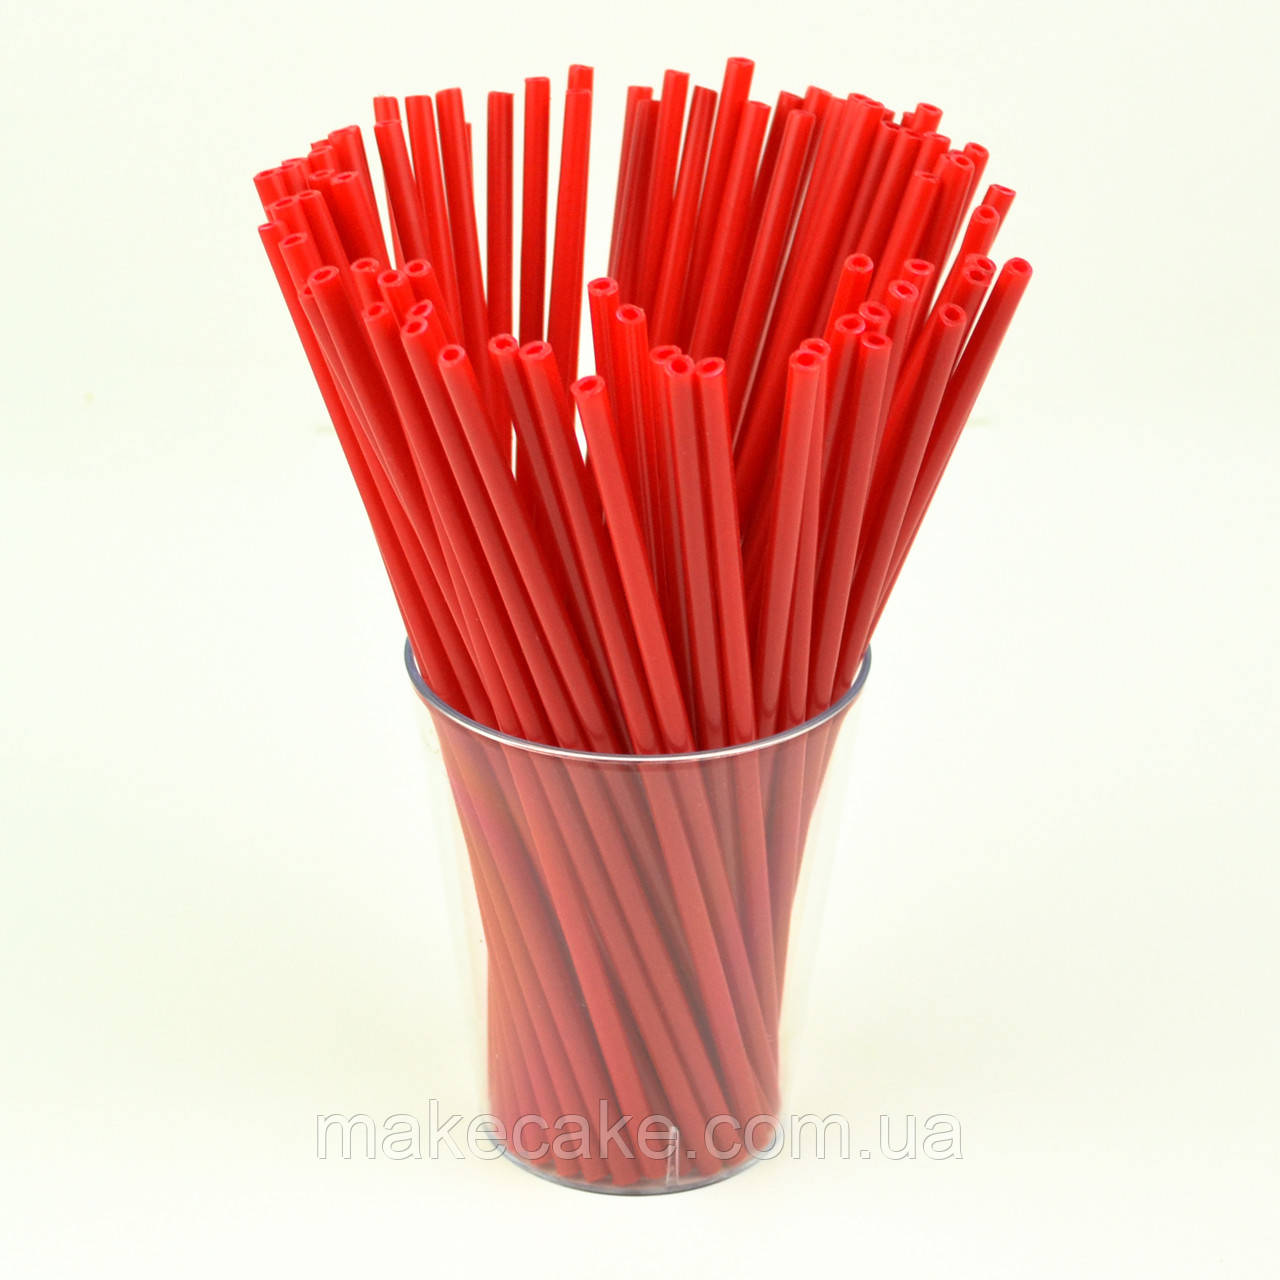 Палички для кейк-попсів пластикові Червоні 15 см 50 шт.